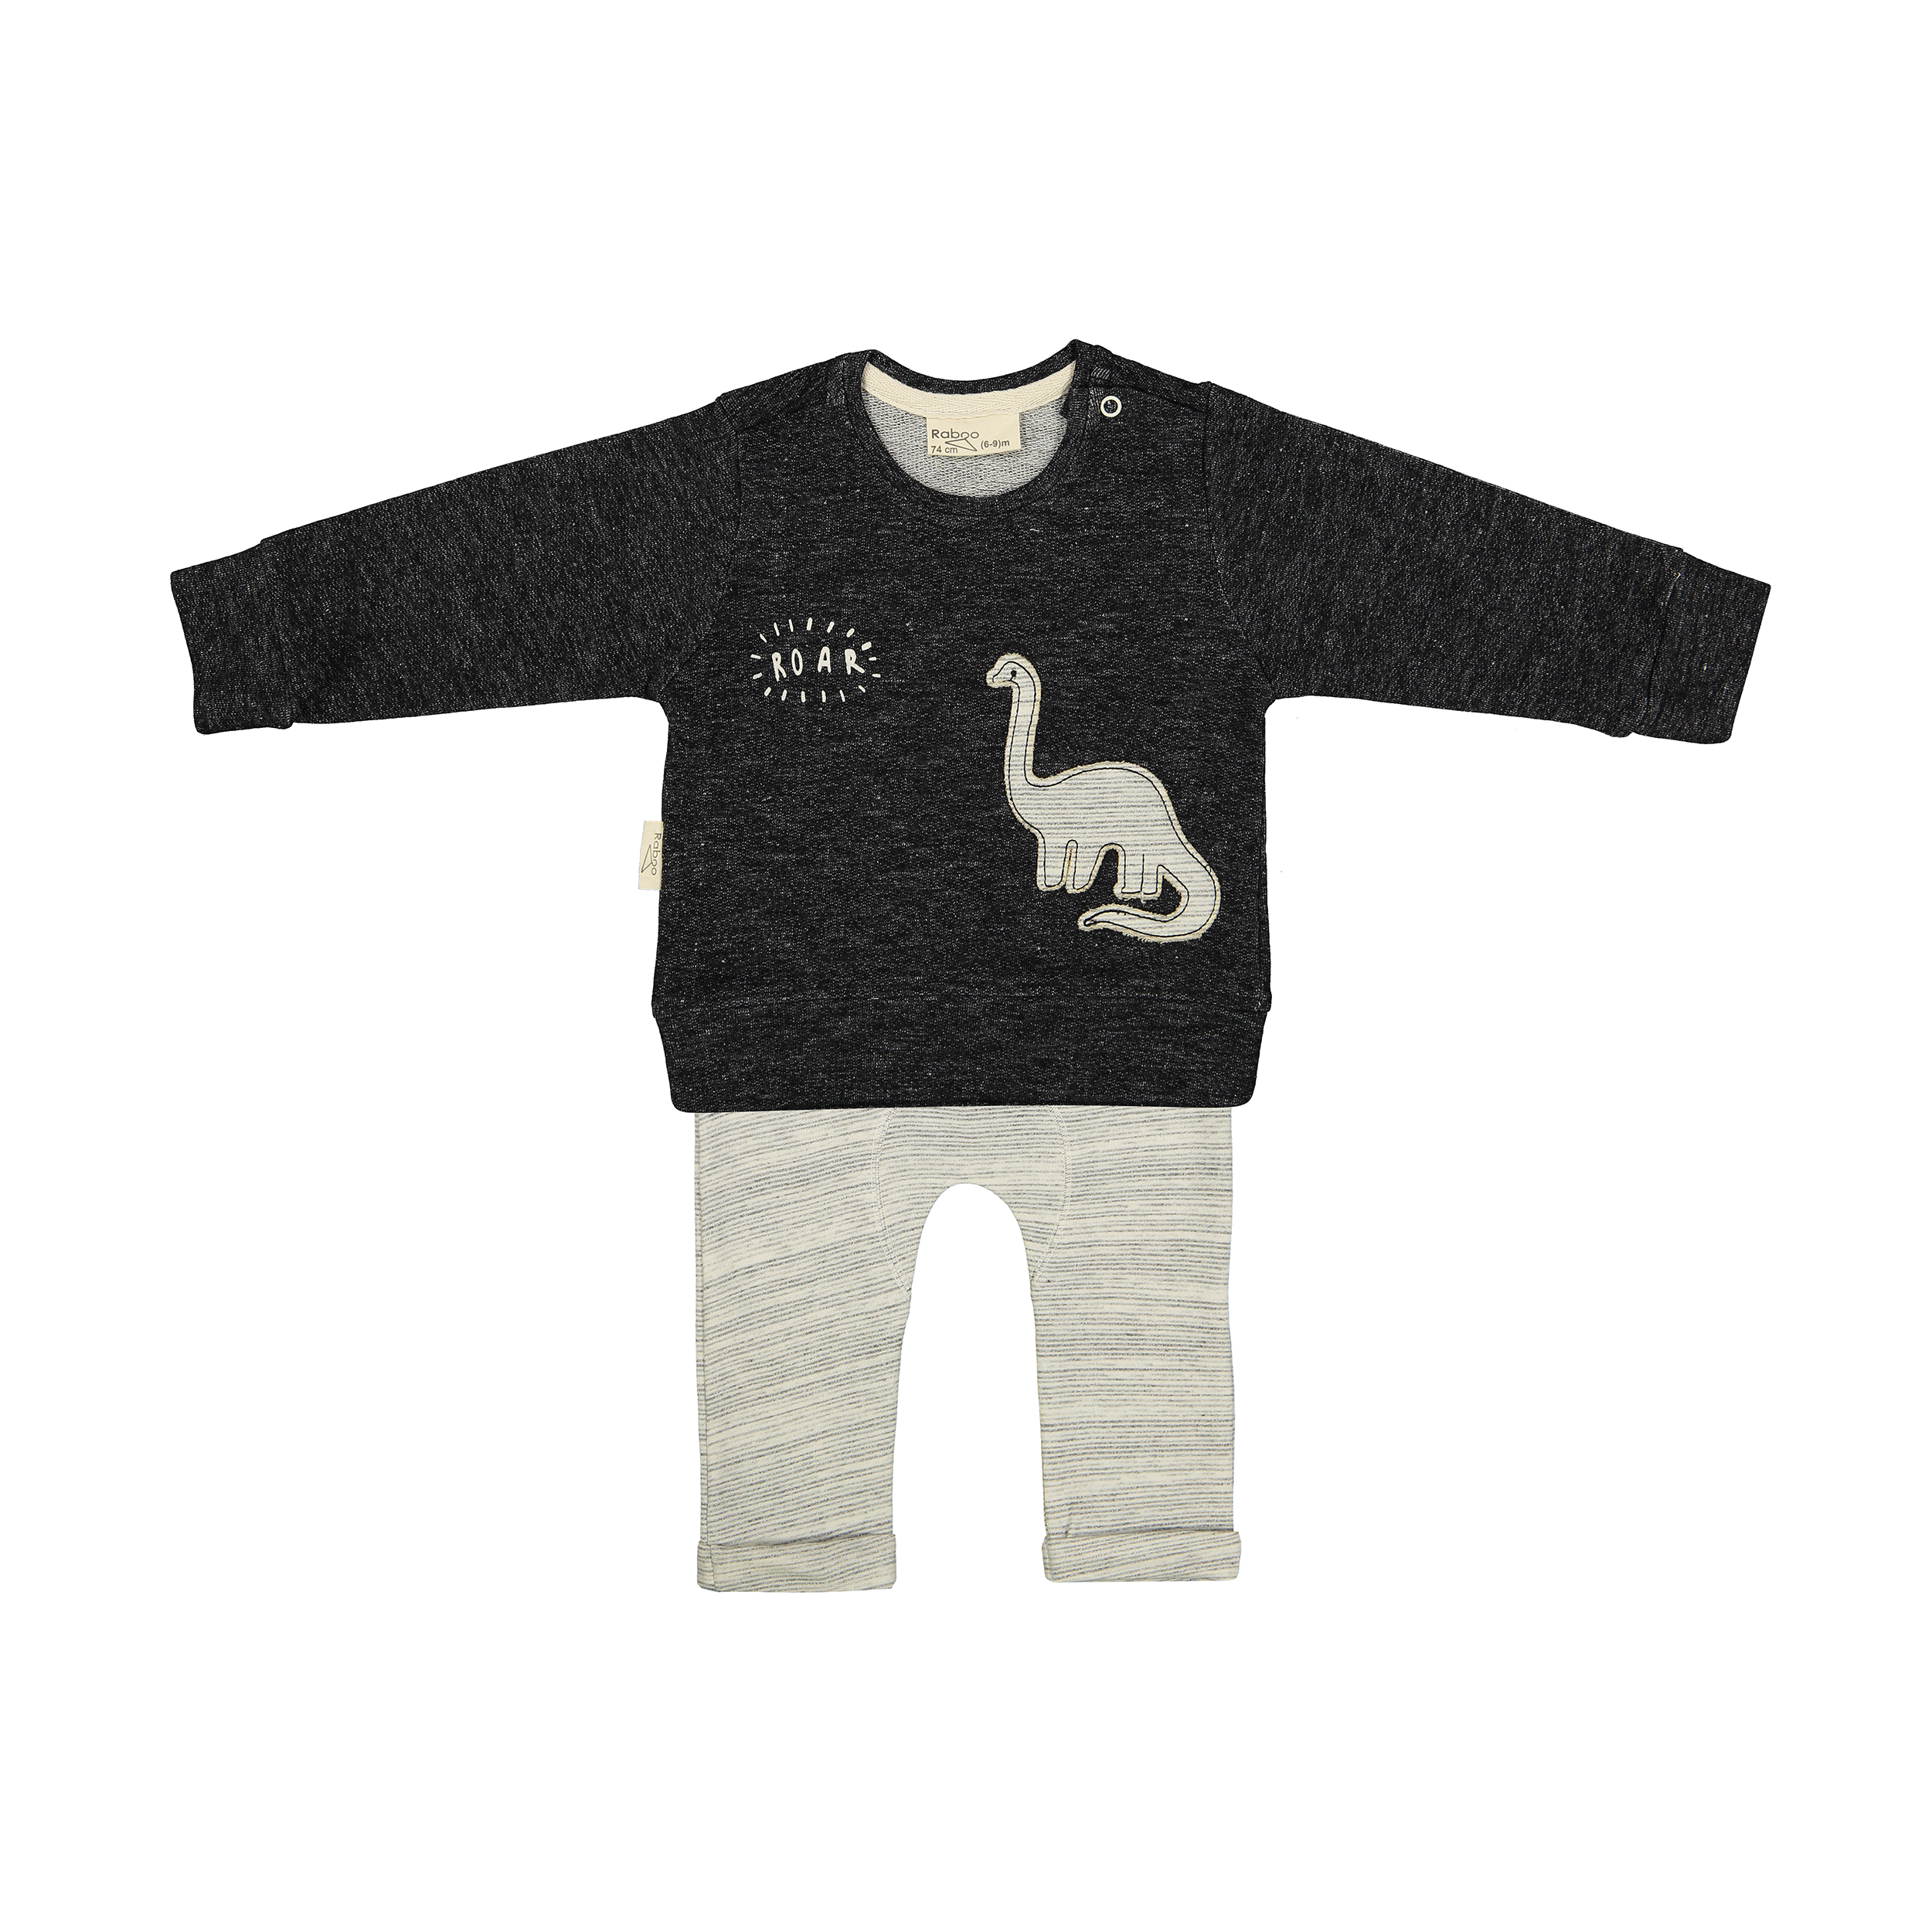 ست تی شرت و شلوار نوزادی رابو مدل 2051100-9490 -  - 1